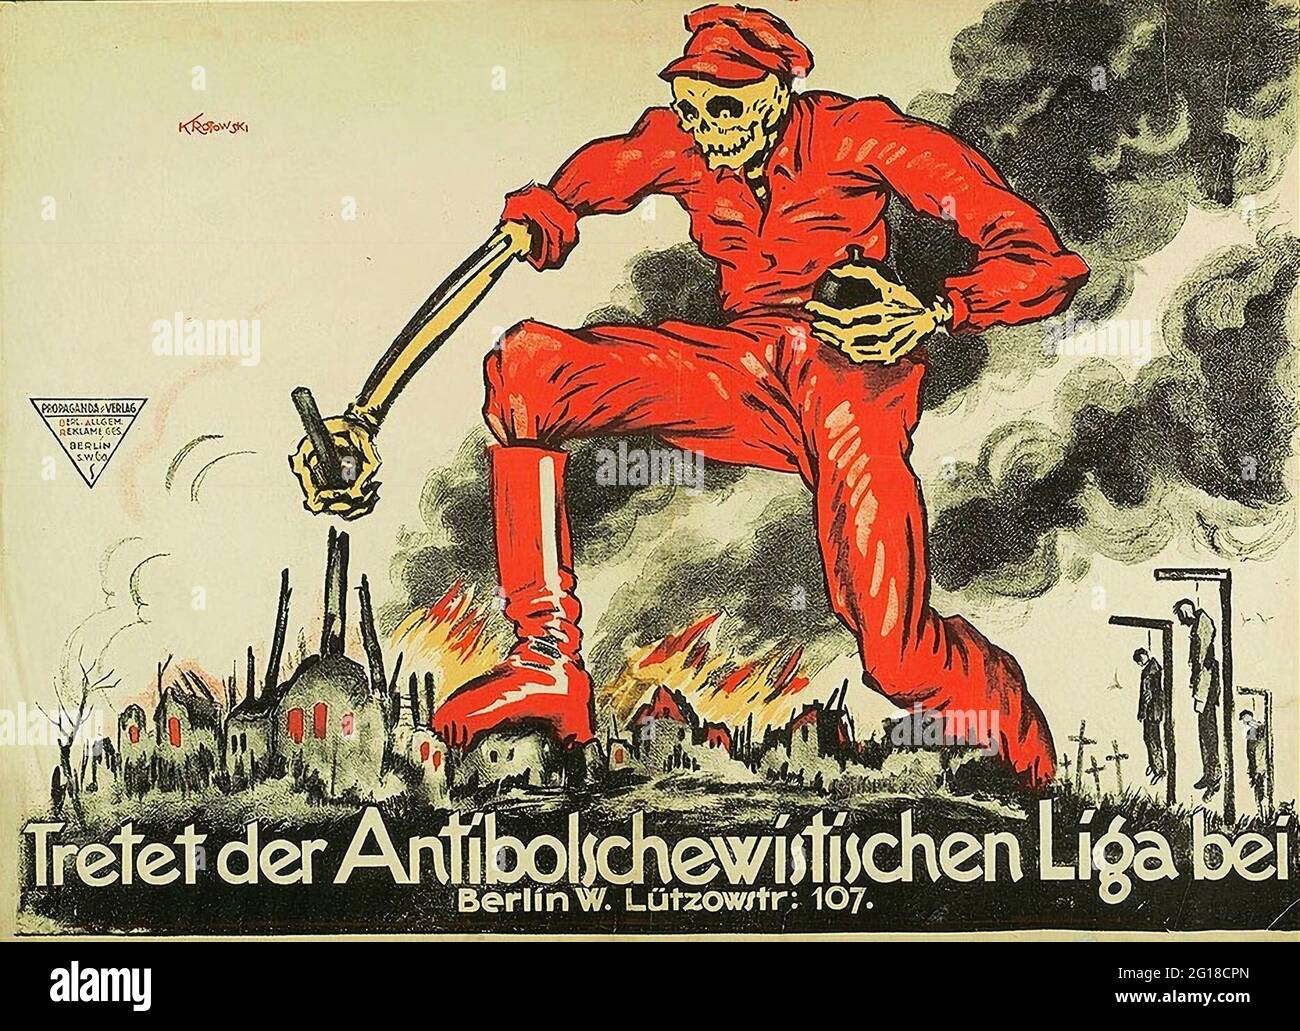 Un poster tedesco anti-comunista dal 1919 mostra la morte vestita di rosso camminando su una città in fiamme con lo slogan "Unisciti alla Lega Anti-Bolscevik" Foto Stock